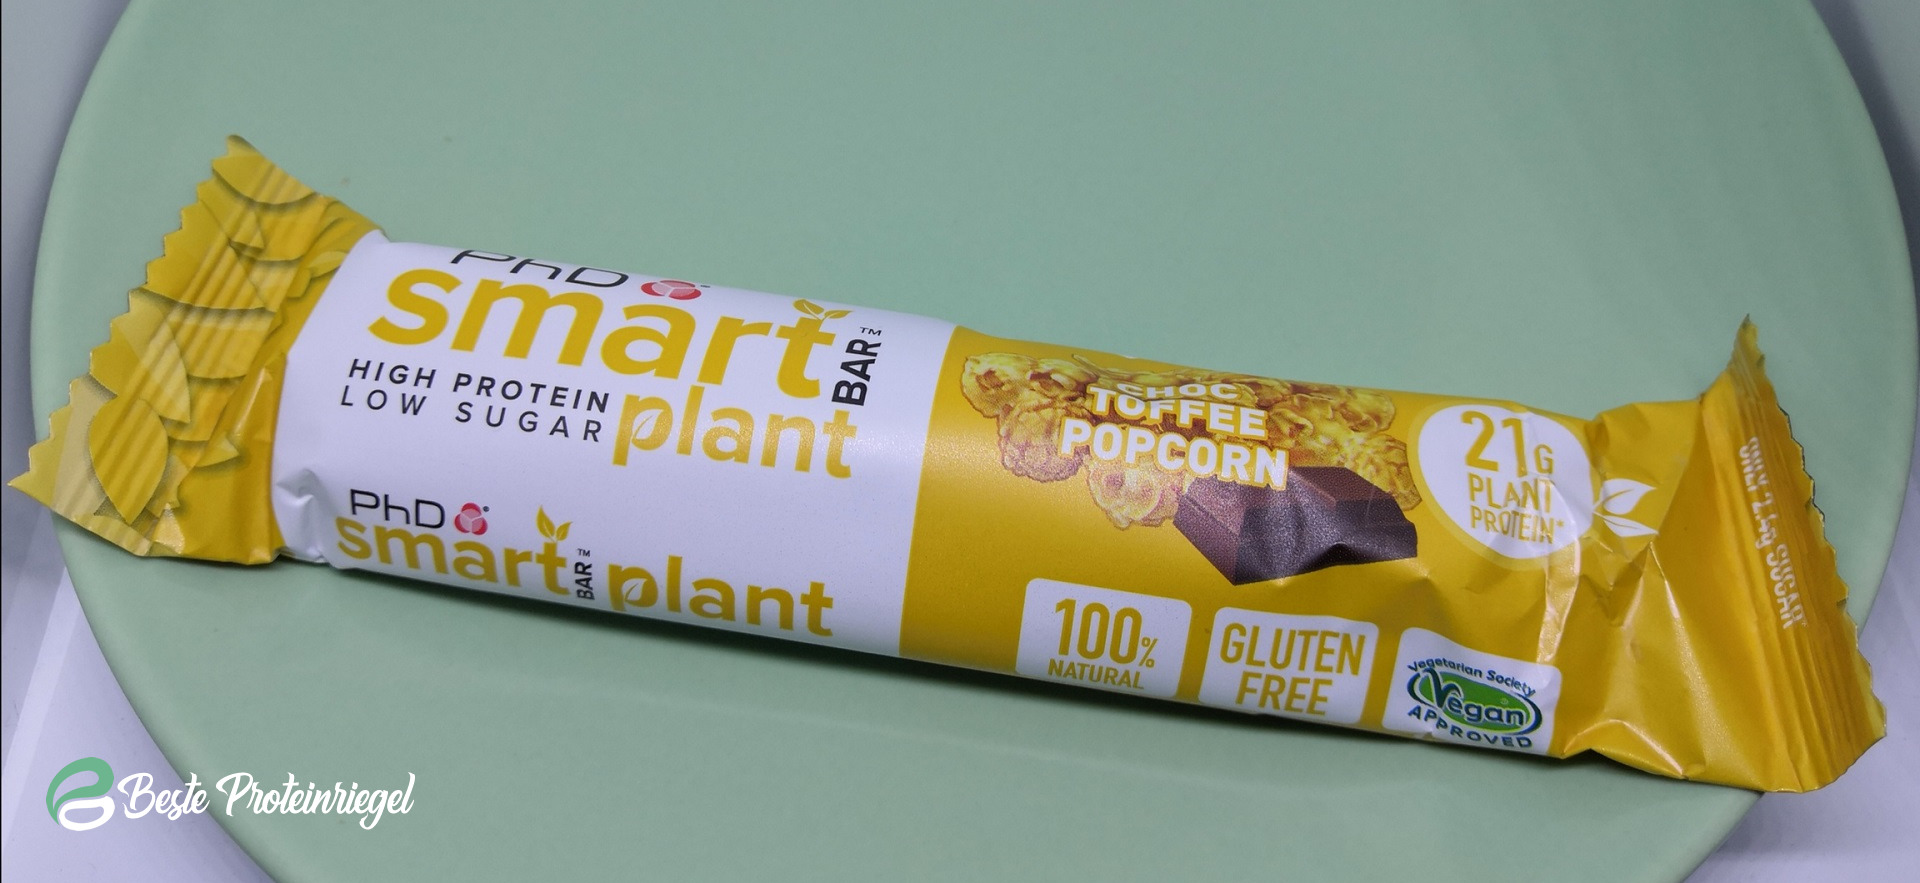 PhD Smart Bar Plant Verpackung